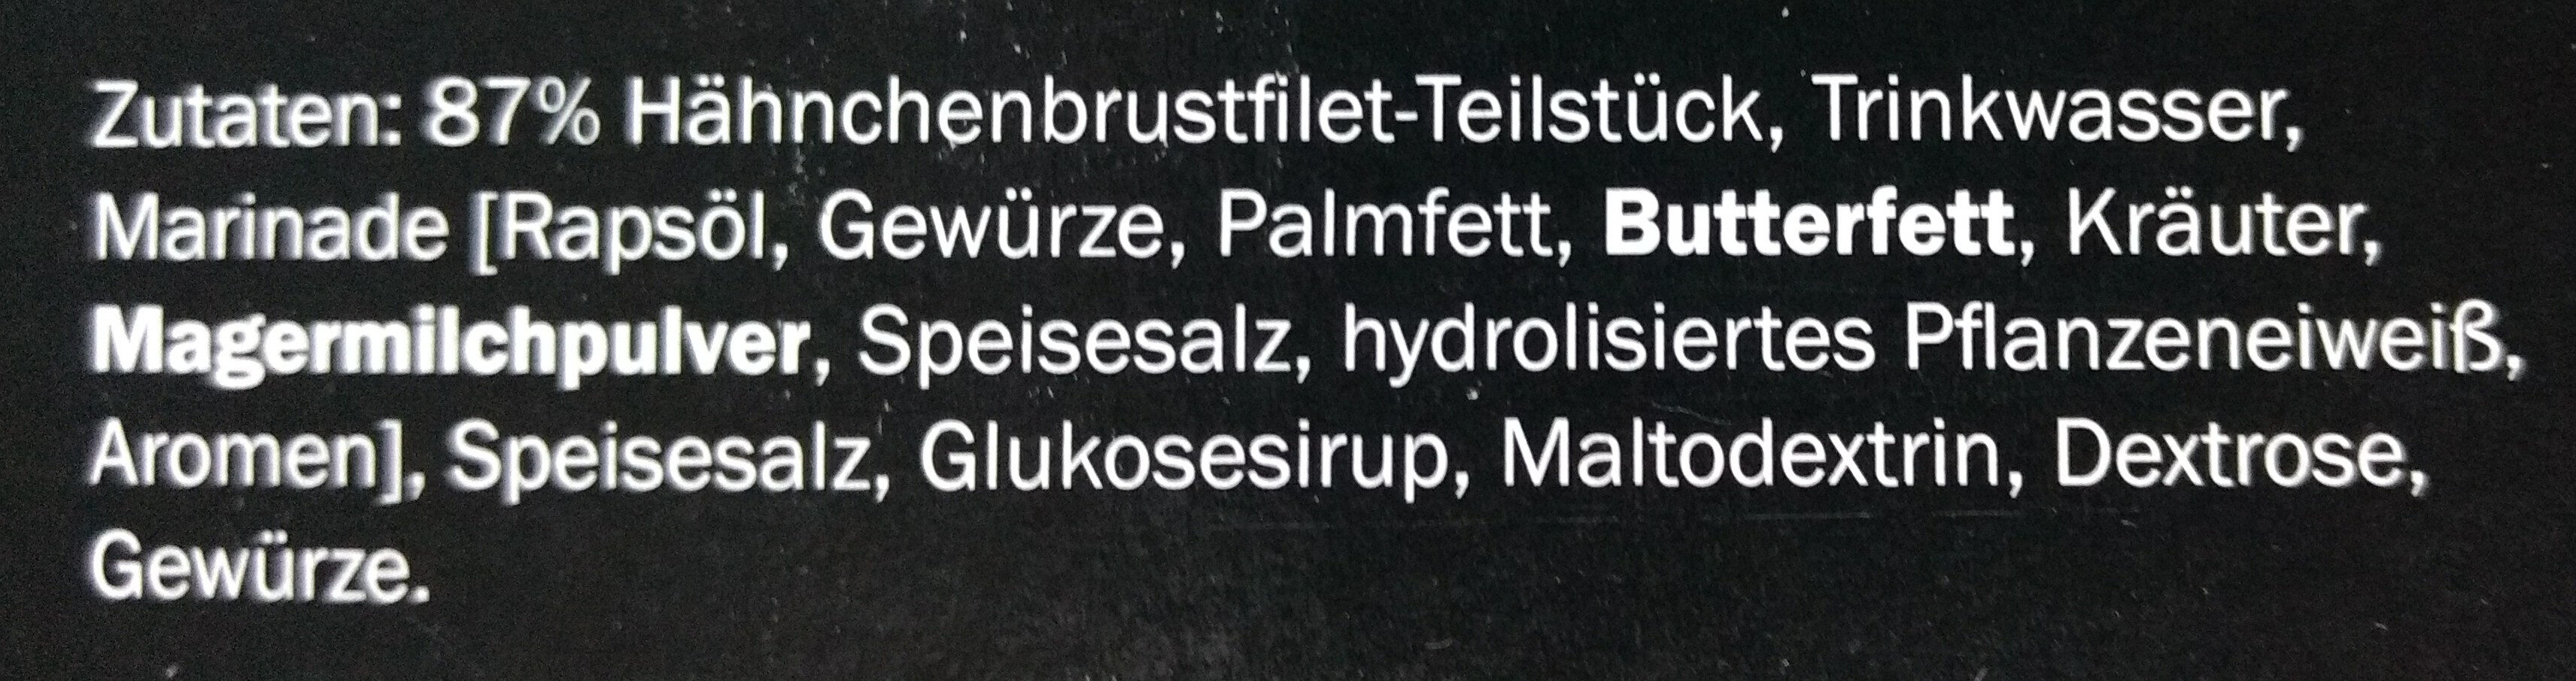 Hähnchenbrustfilet Teilstücke Kräuter - Ingredients - de